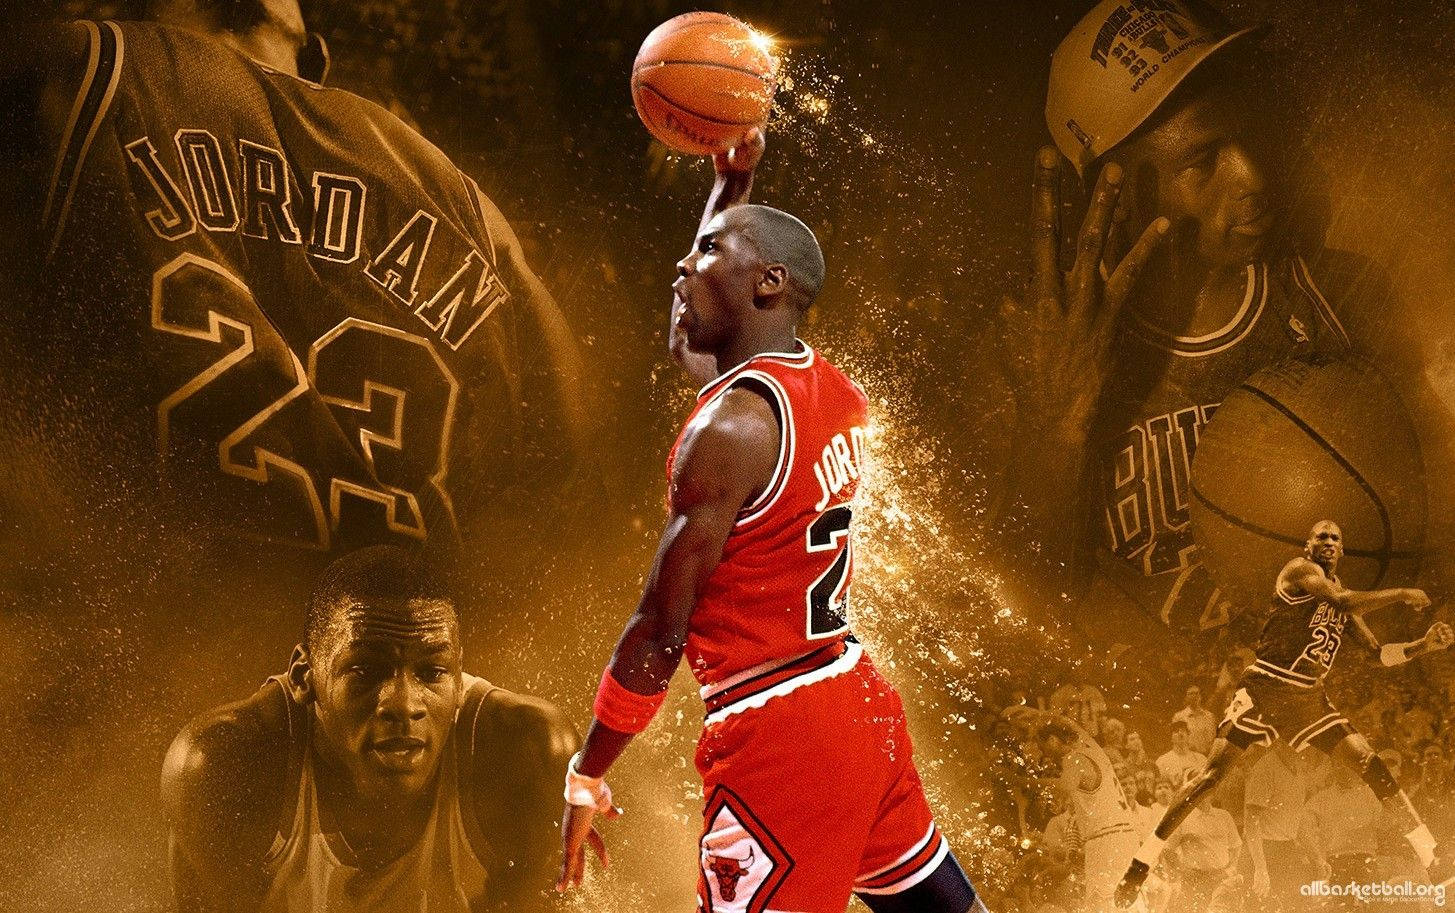 The legendary Michael Jordan is the cover athlete for NBA 2K16 Wallpaper